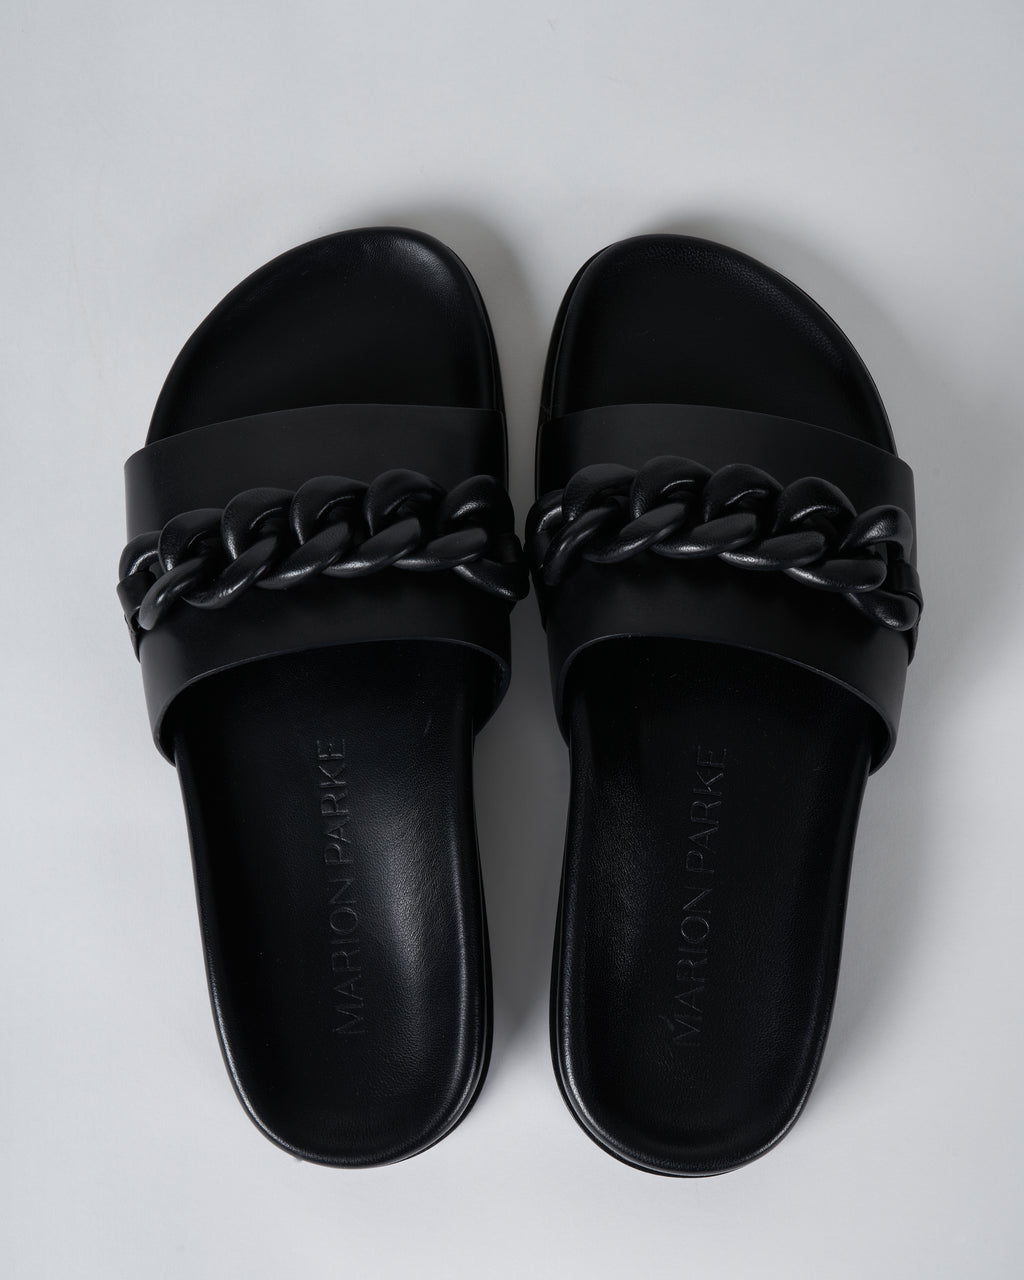 Marion Parke Christine Sandal Black Leather – scarpa